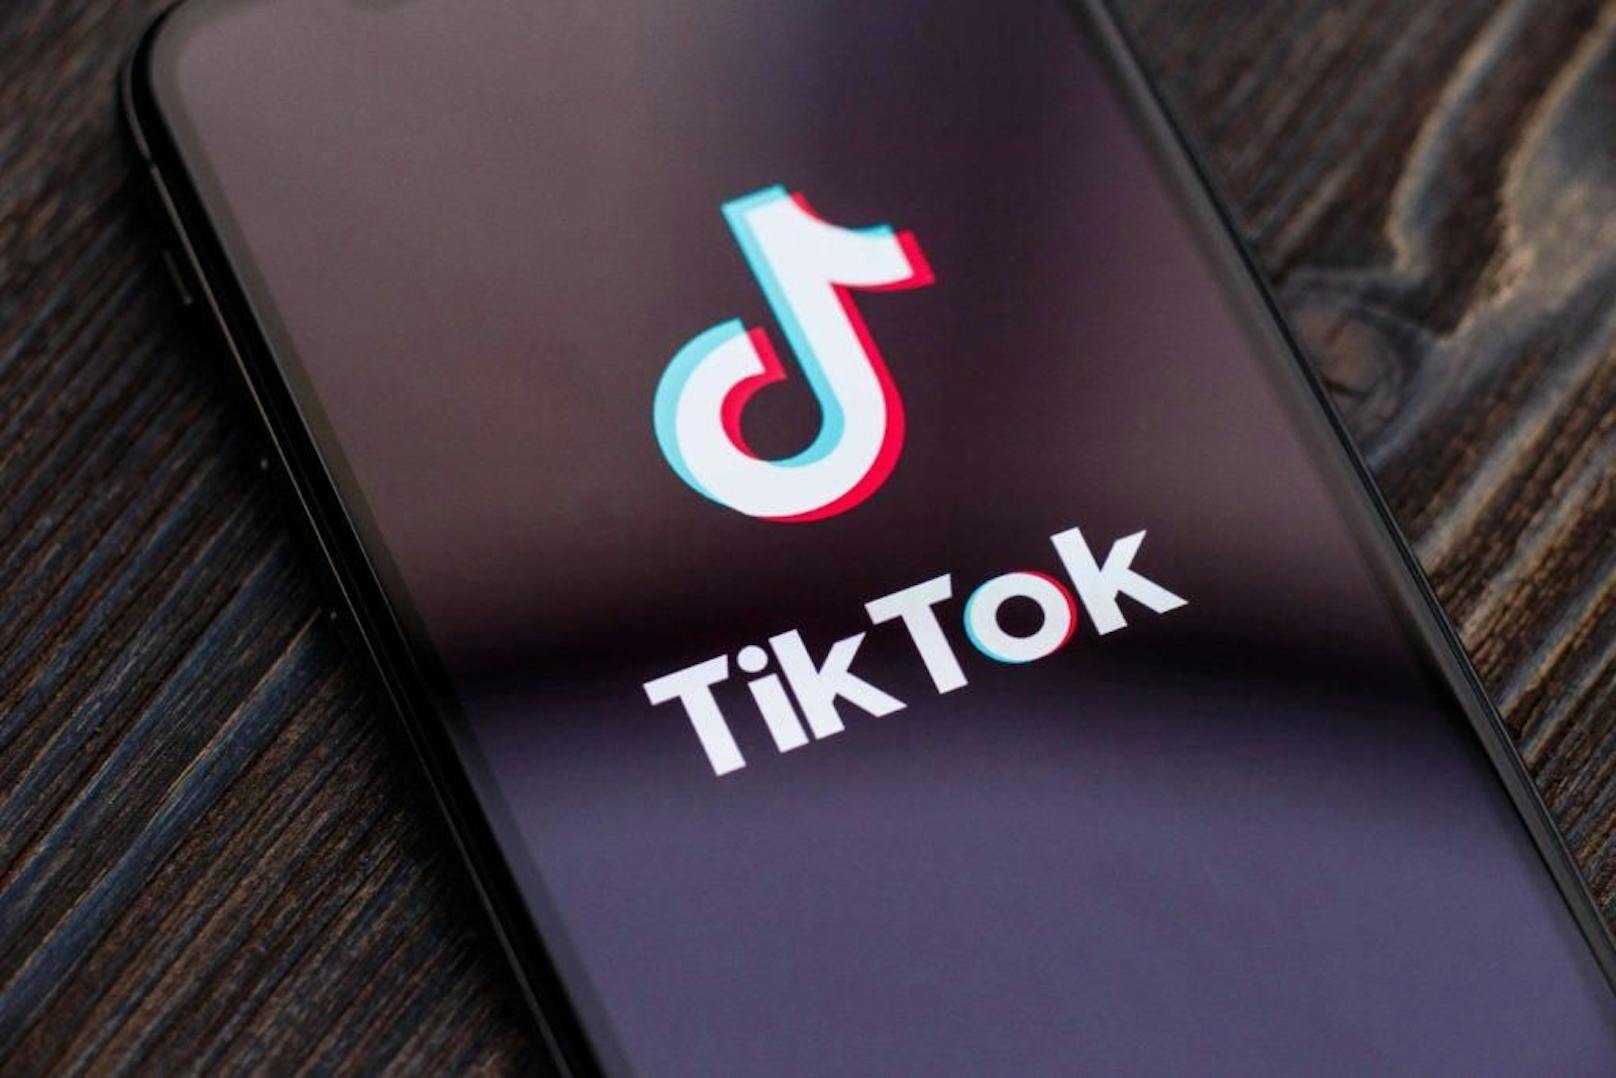 Erst schauen, dann zocken: TikTok will Gaming einführen